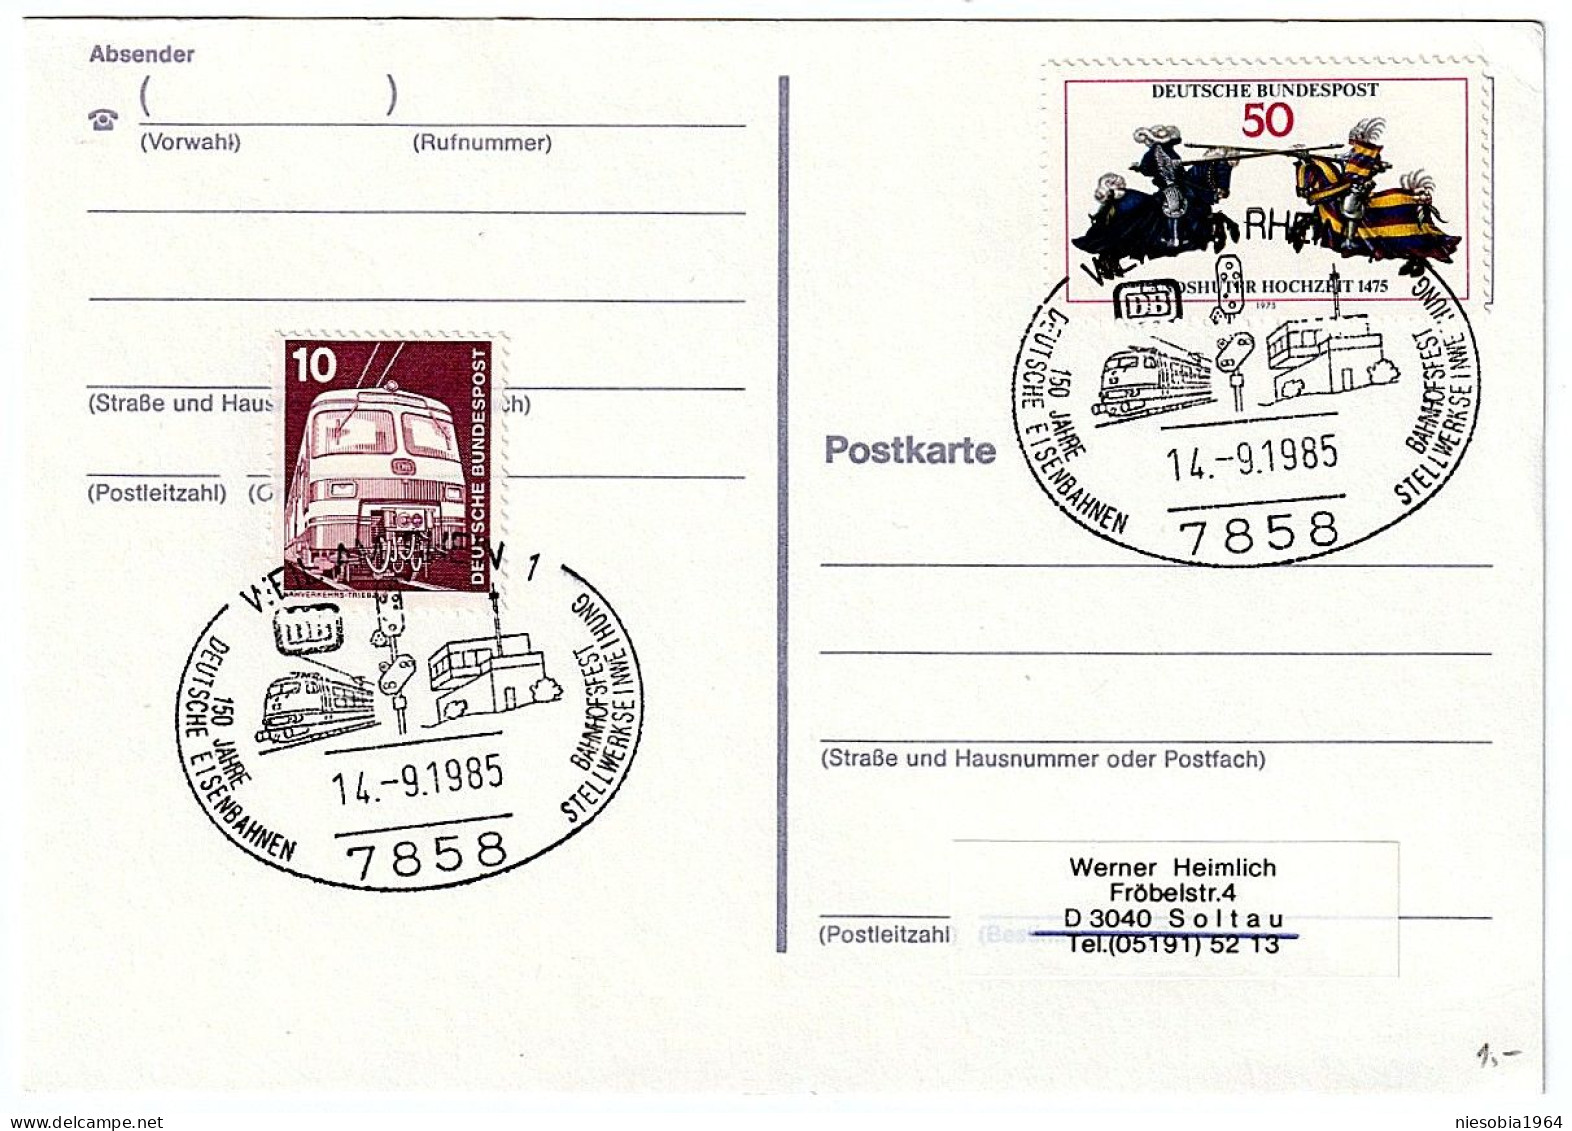 150 Jahre Deutsche Eisenbahnen Weil Am Rhein 14.09.1985 Postcard, Railway Theme, 2 X Occasional Stamps - Postcards - Used